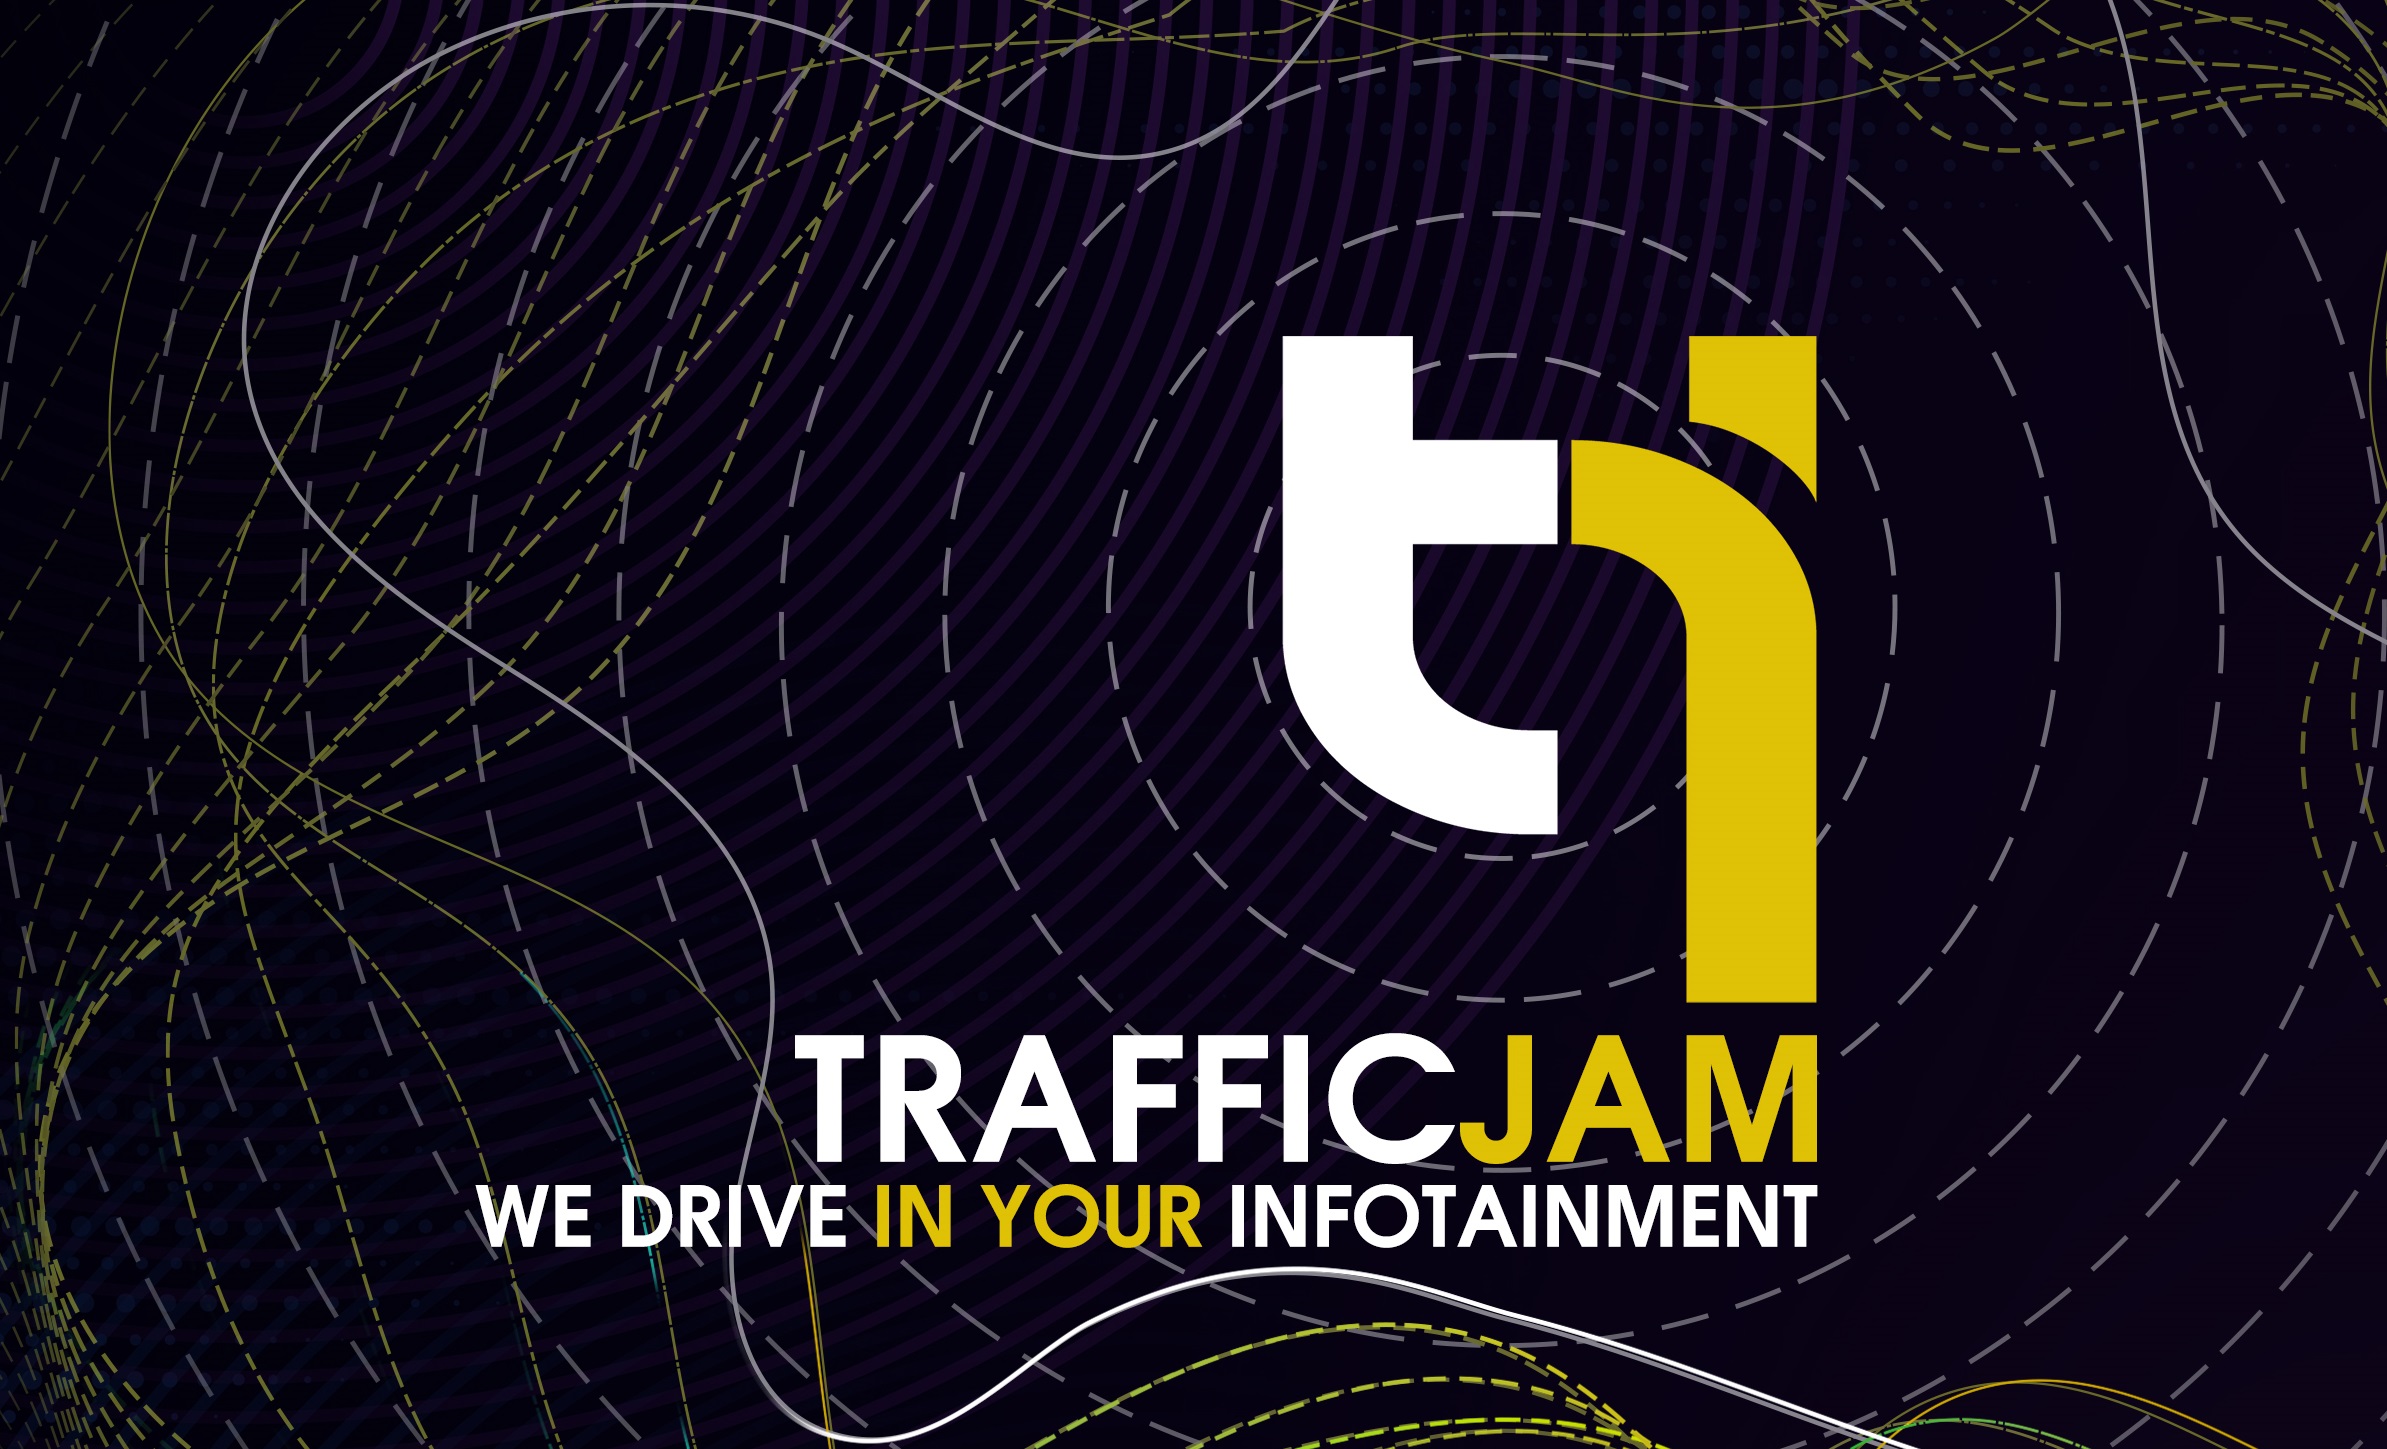 Grazie a SBM arriva TrafficJam, realtà multimediale in piena espansione